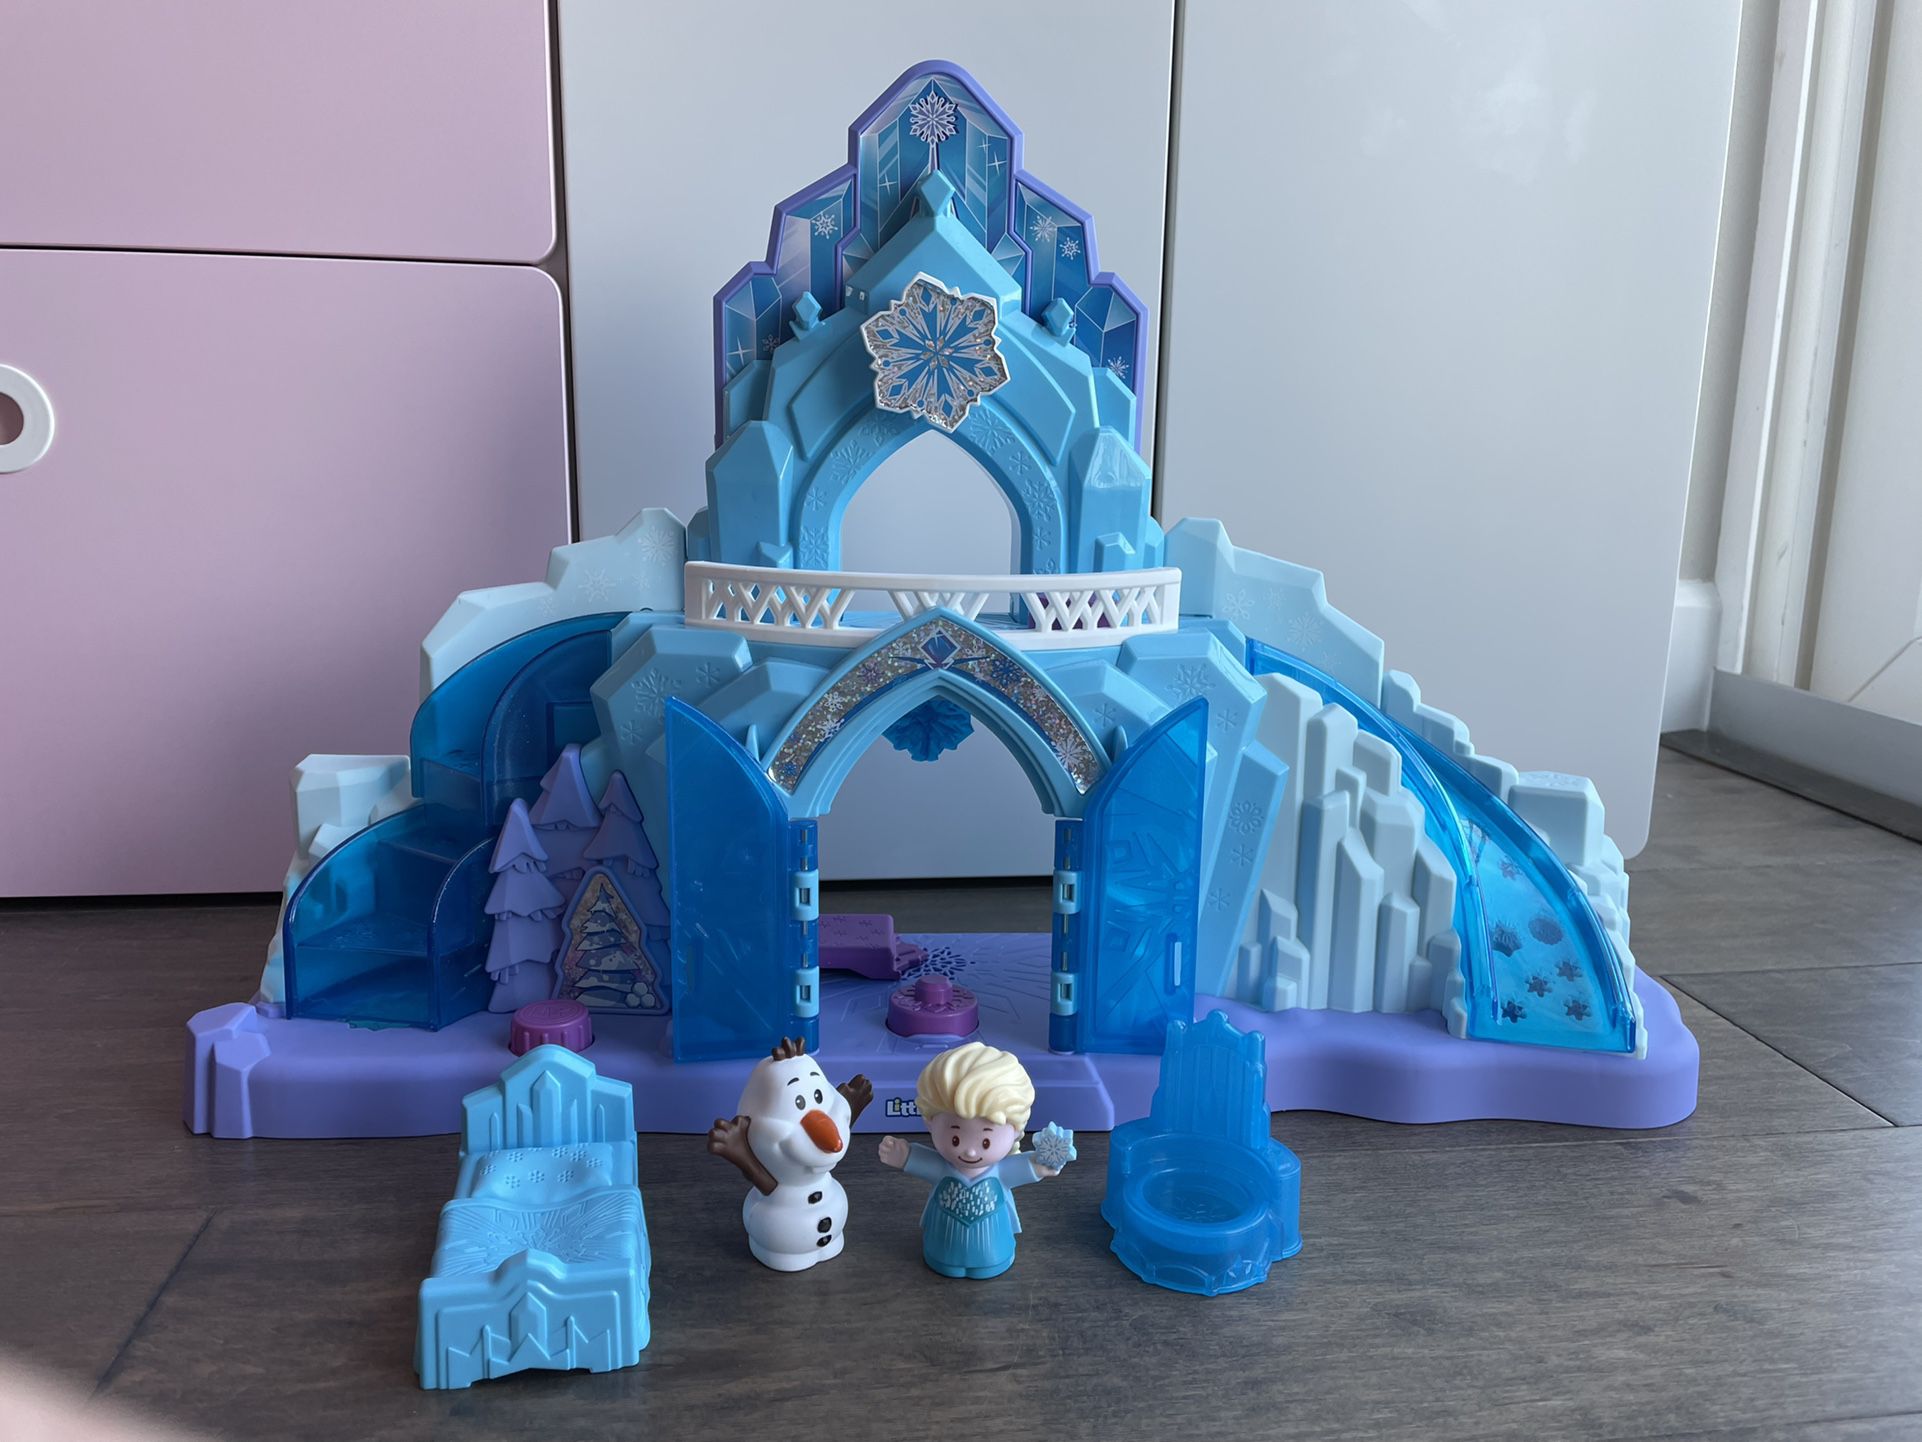 Disney Frozen Elsa's Ice Palace by Little People